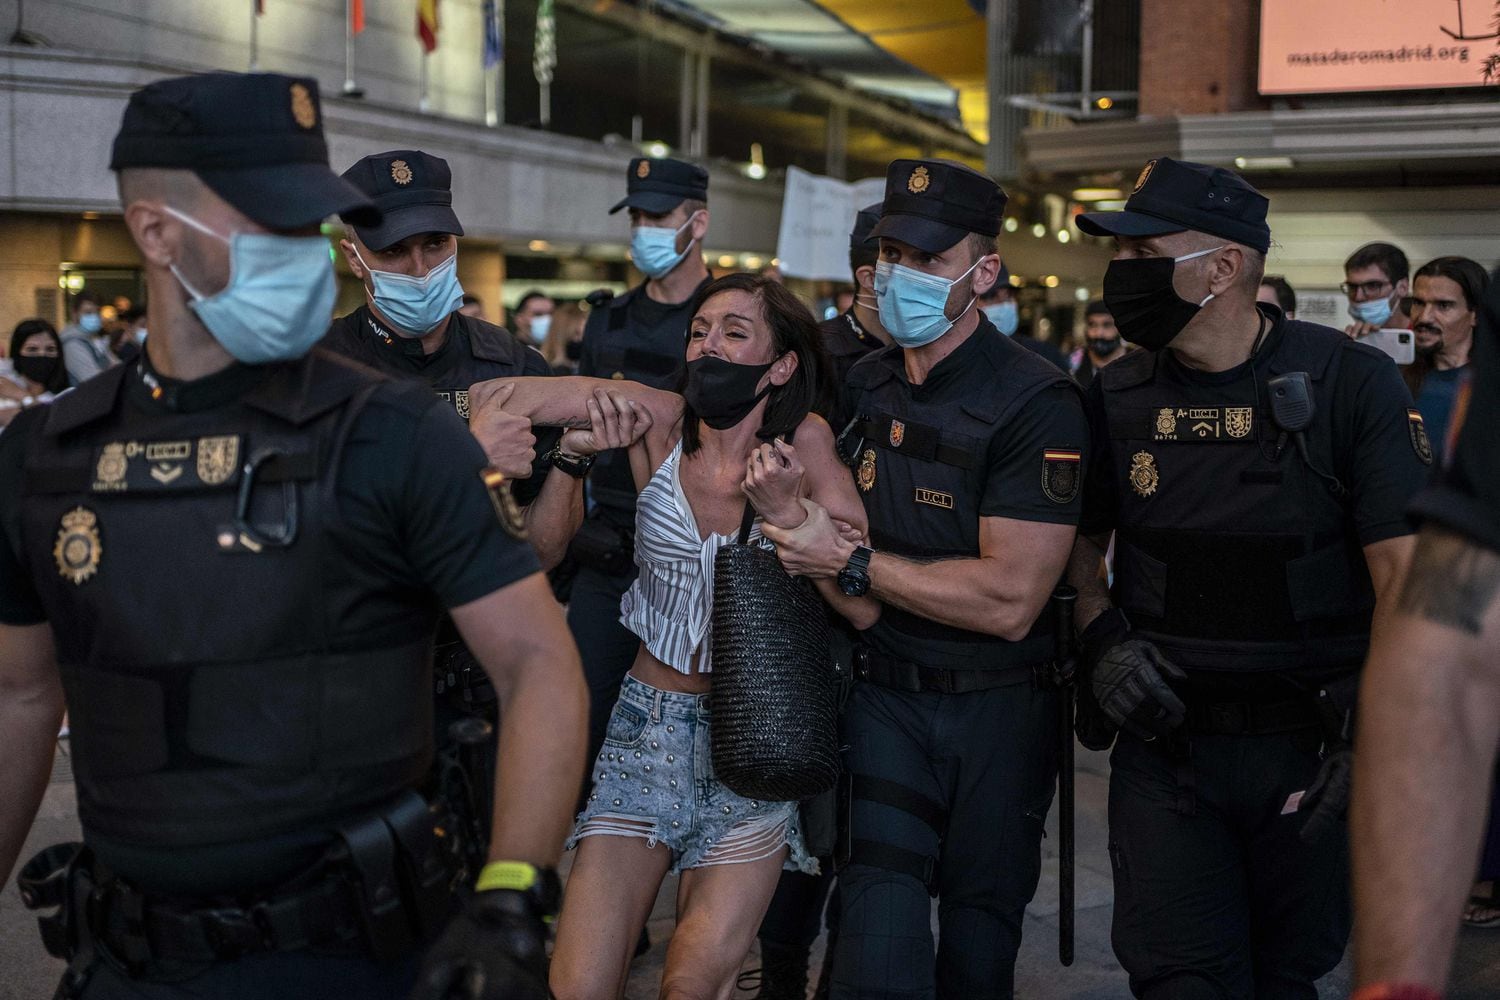 13 detenidos en el centro de Madrid supuestamente por desobedecer a la orden de usar la mascarilla LDTGTWMCARFY3BRGY2KFRDKAXM